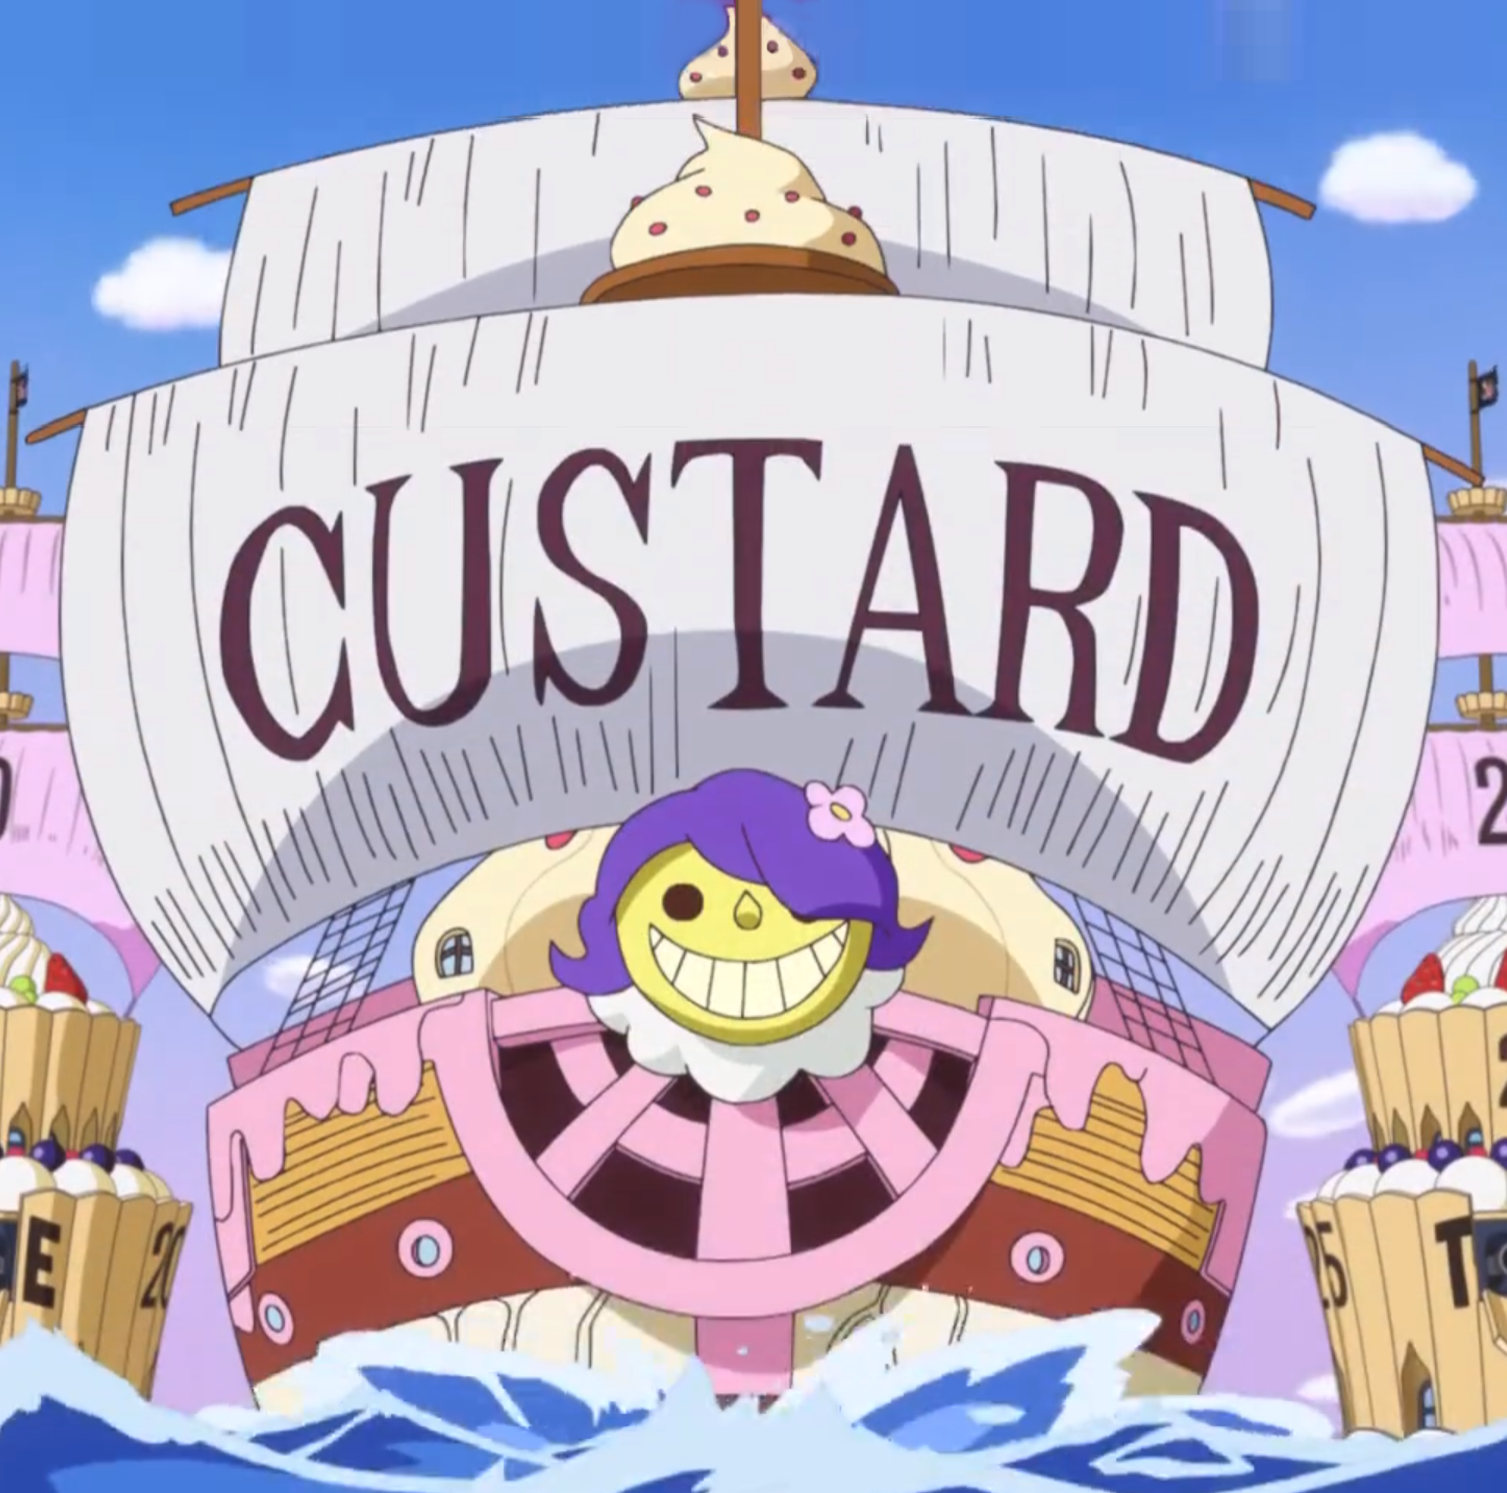 卡斯塔德的船